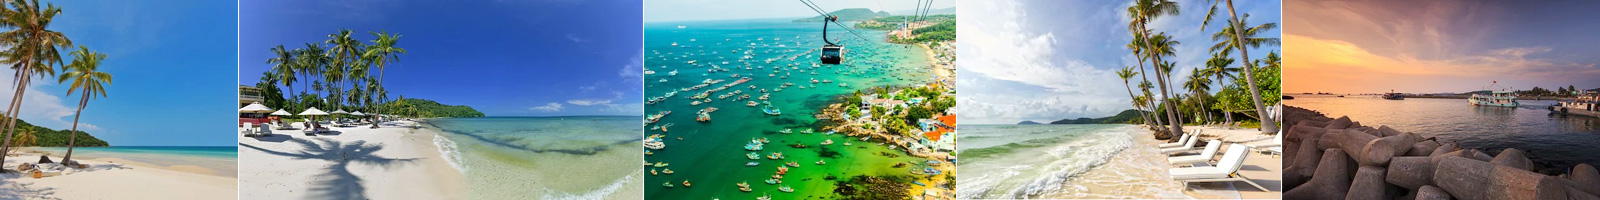 Tour cano 4 đảo Phú Quốc ghép khách lẻ hàng ngày giá rẻ nhất